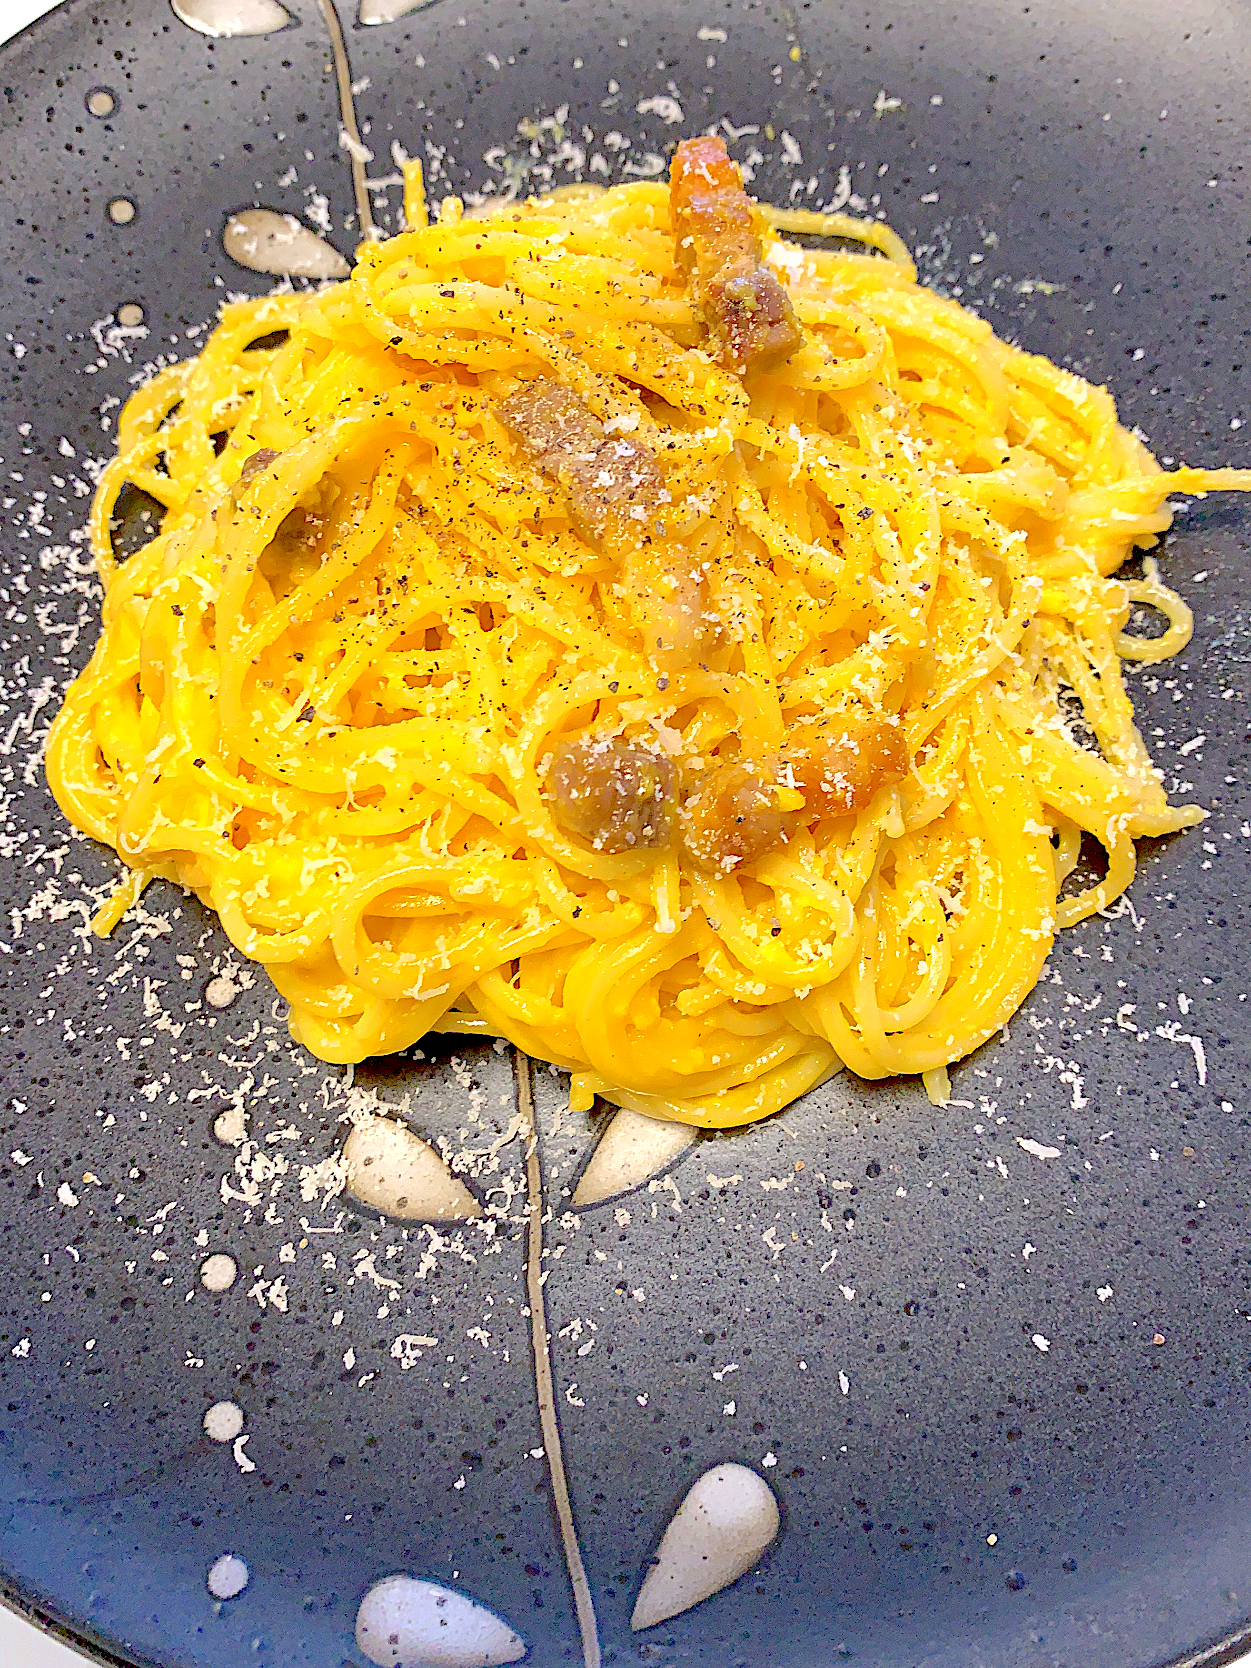 motohiroさんの料理 本場のレシピで作った、濃厚カルボナーラ　自家製パンチェッタとパルミジャーノ、卵黄で作るカルボナーラ